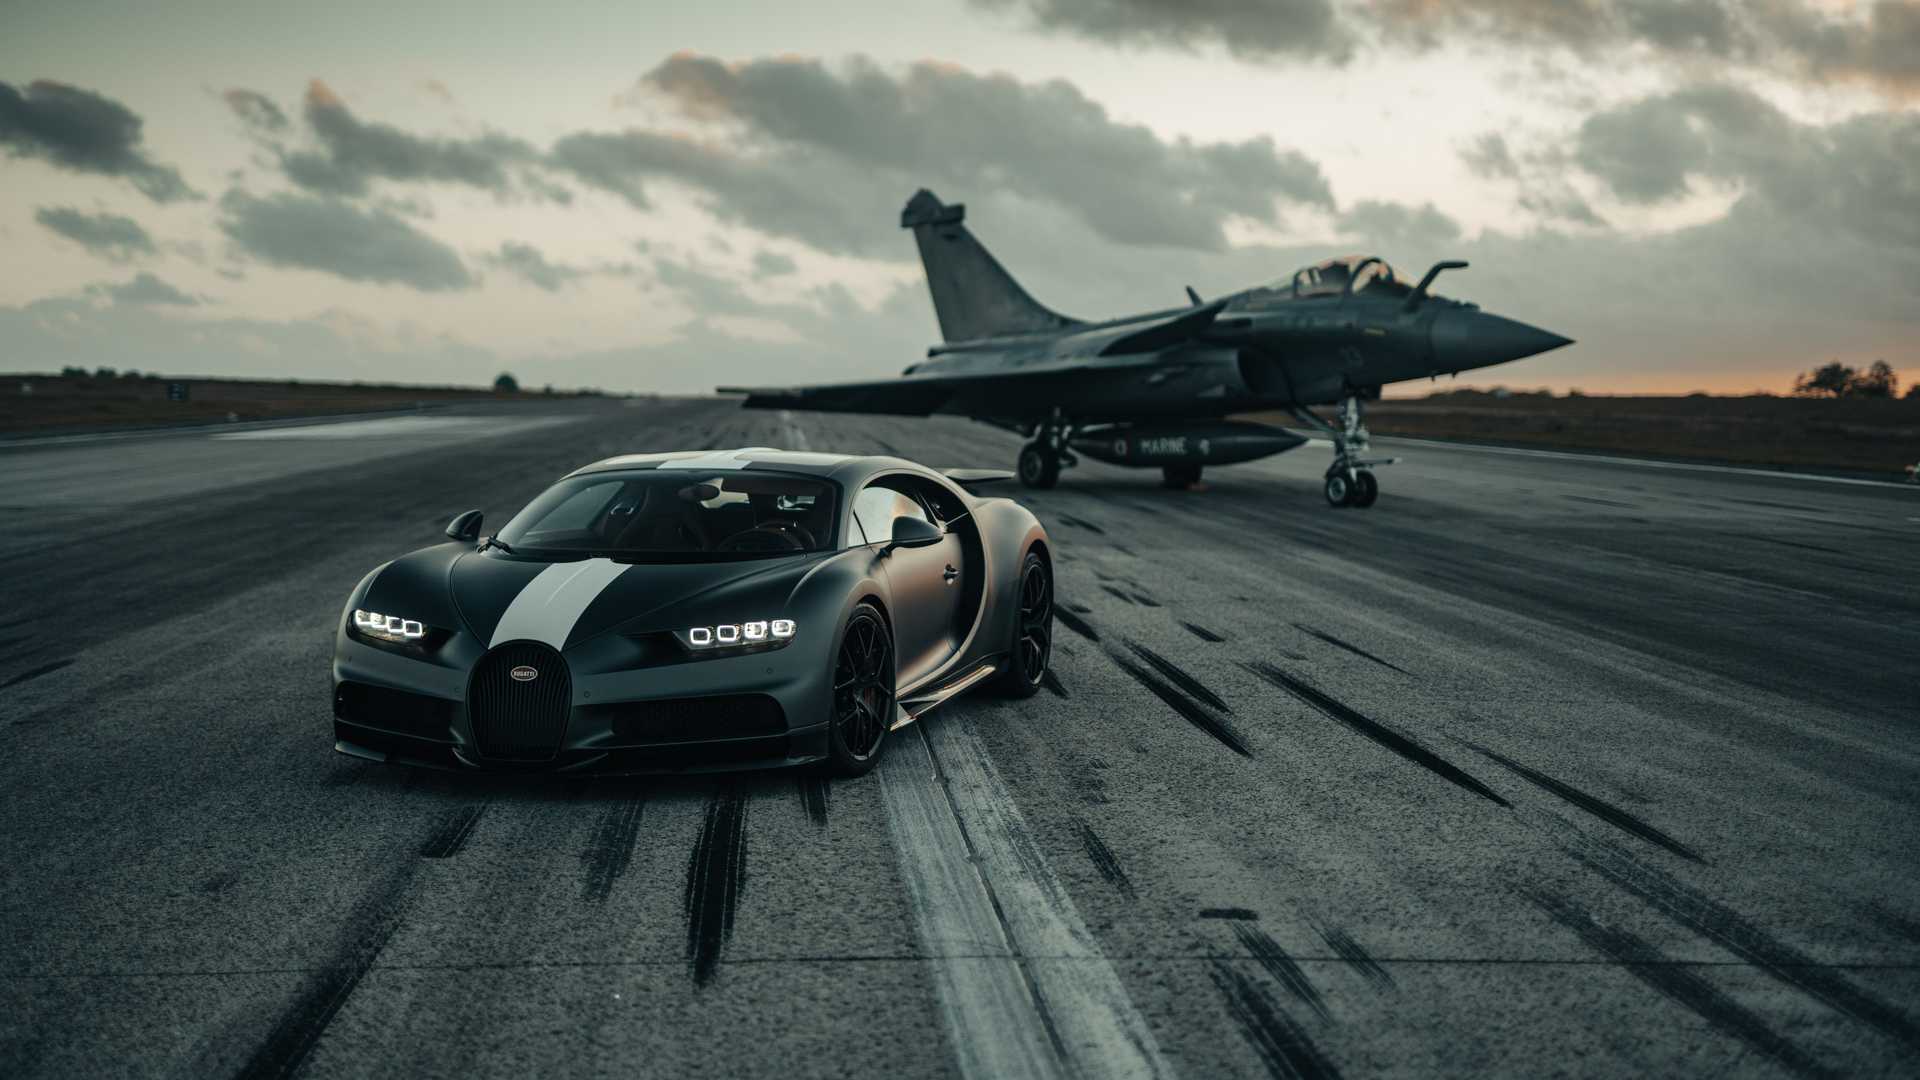 Xem đua giữa siêu xe Bugatti và máy bay và sự bất ngờ nào sẽ đến với cái kết, bạn còn chần chờ gì nữa. Cùng đắm mình trong cuộc đua đầy kịch tính giữa chiếc siêu xe Bugatti và chiếc máy bay tốc độ, trong bức ảnh đầy cảm hứng, sáng tạo và đặc sắc.